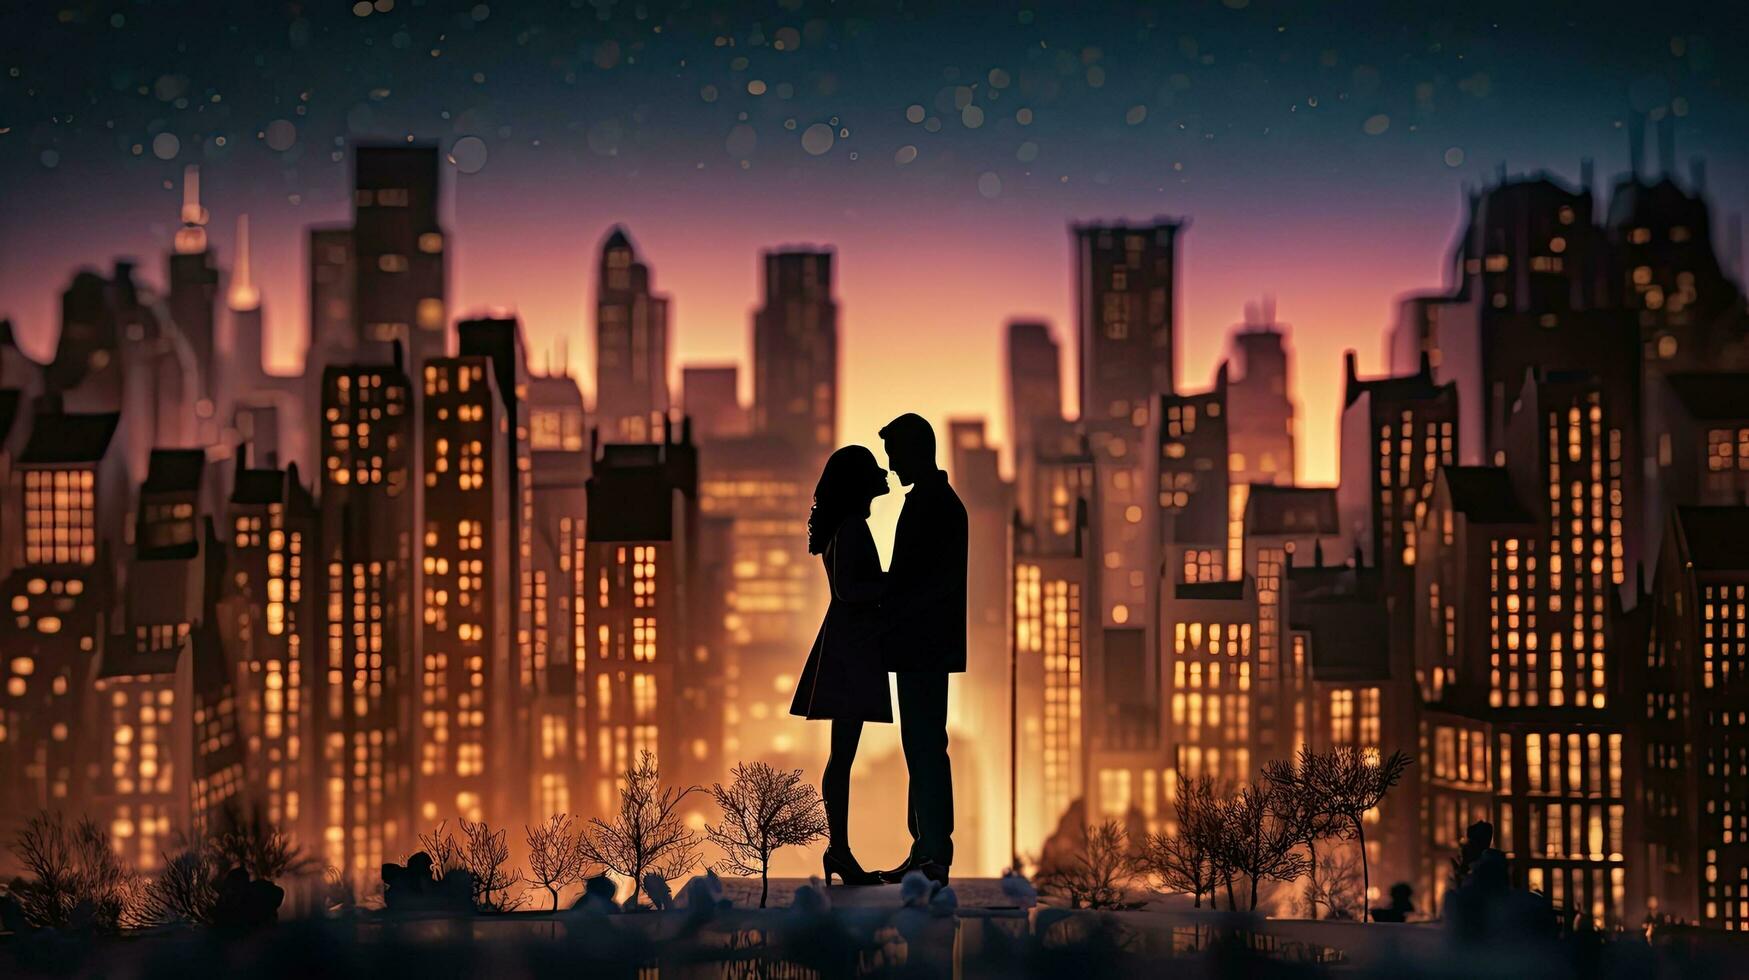 romántico siluetas en frente de un Noche paisaje urbano presentando miniaturas de realista edificios con luces en un dibujos animados estilo foto